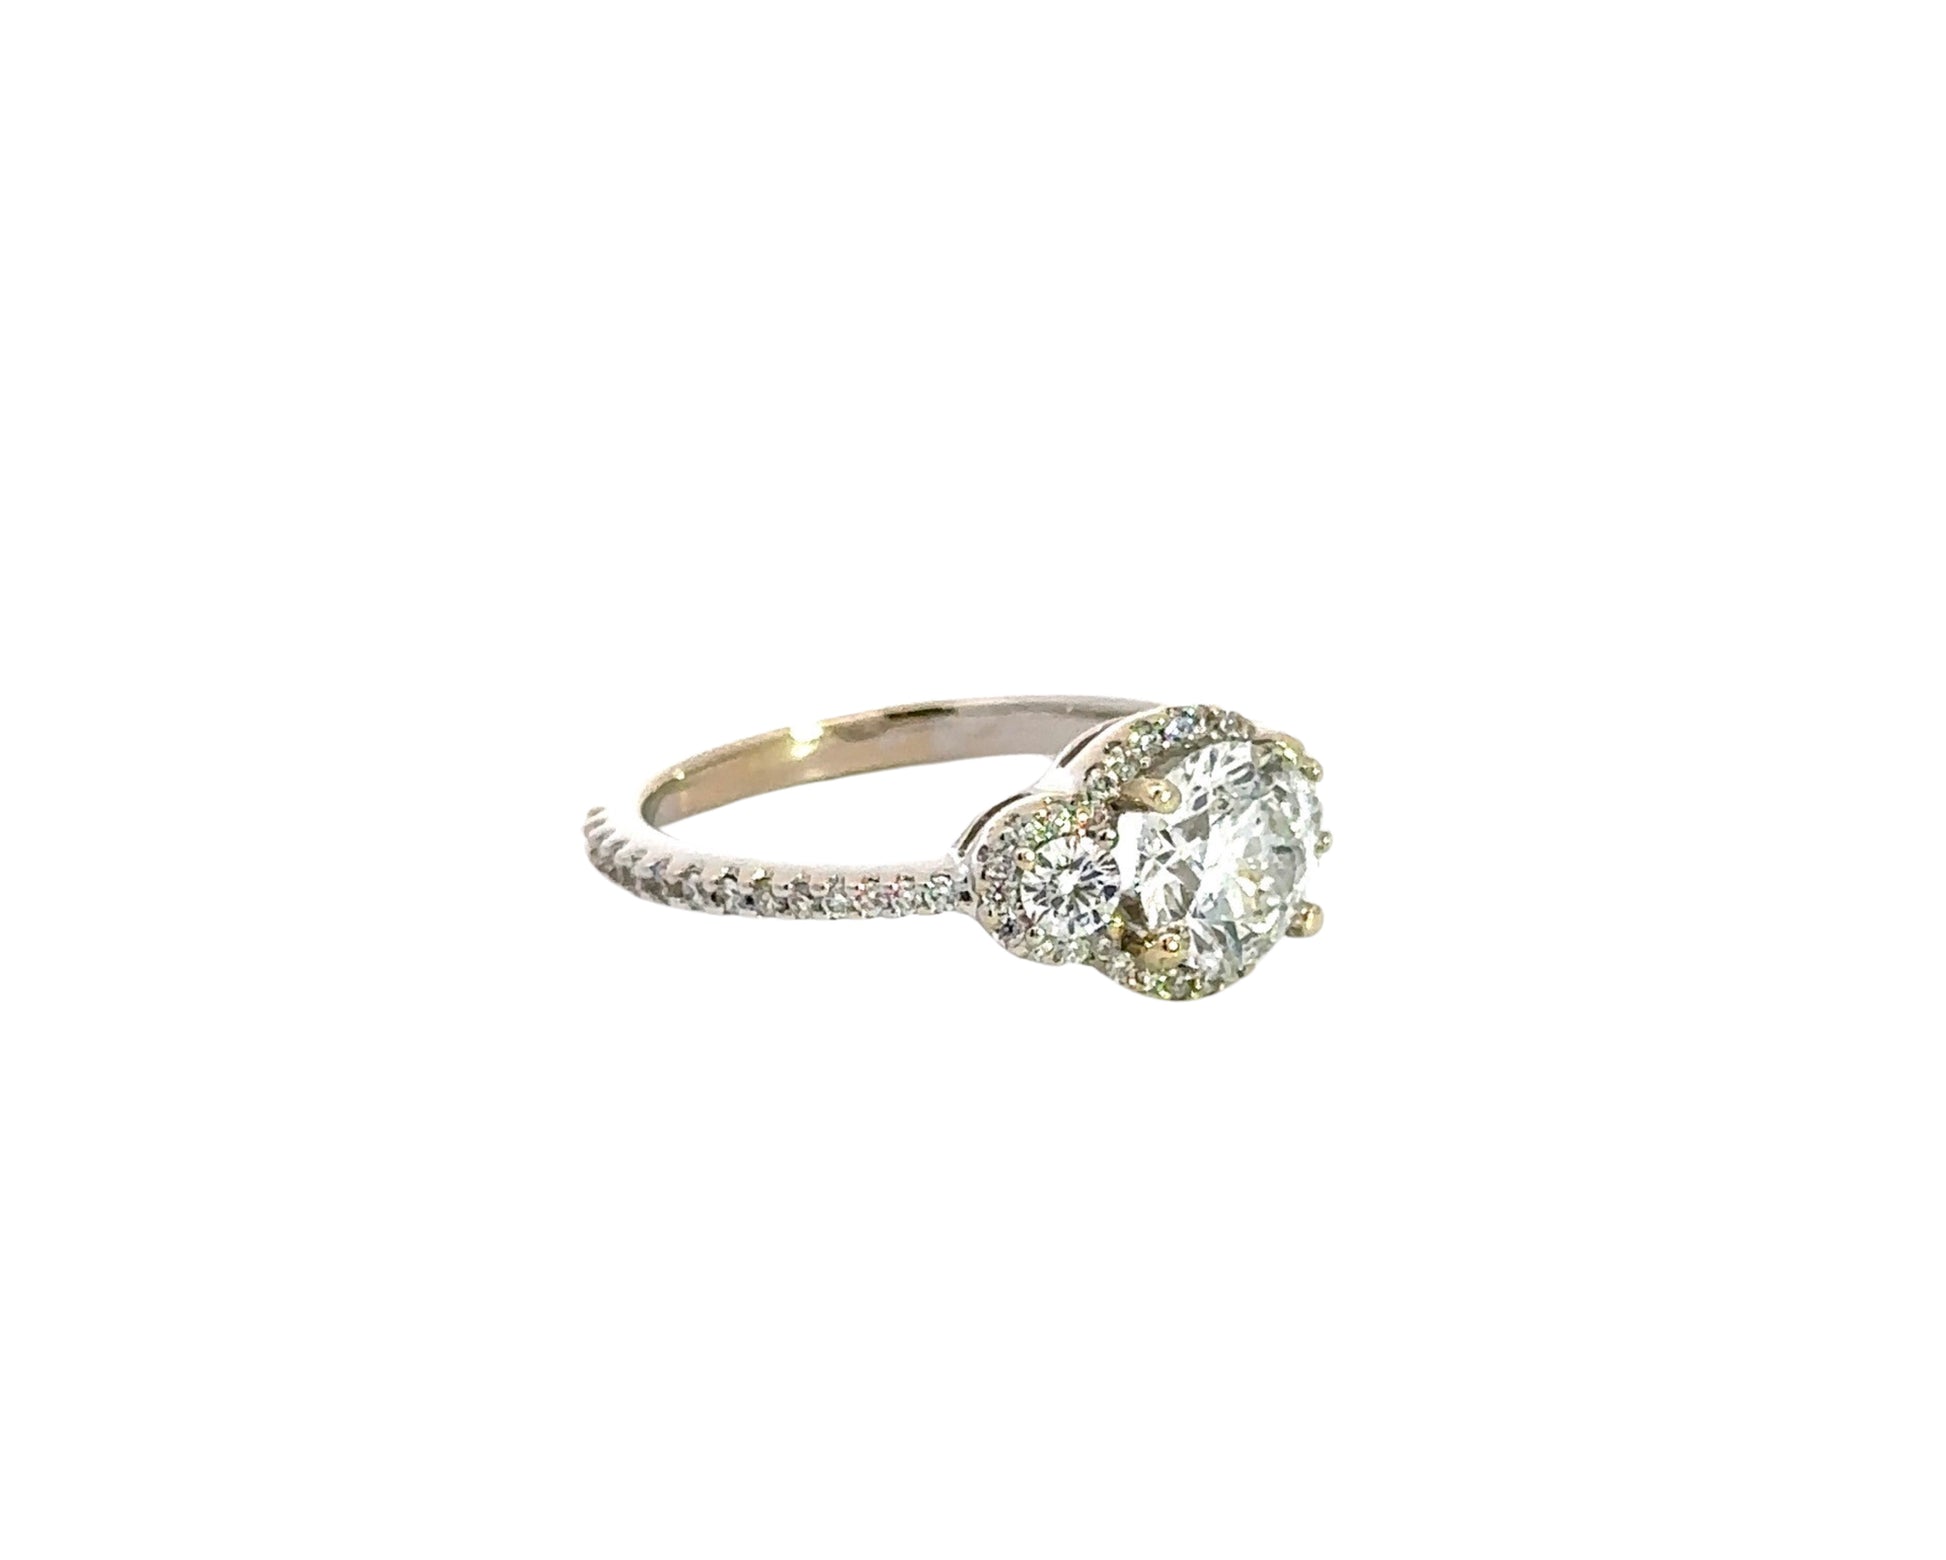 Diagonal view of white gold 3 stone diamond ring 